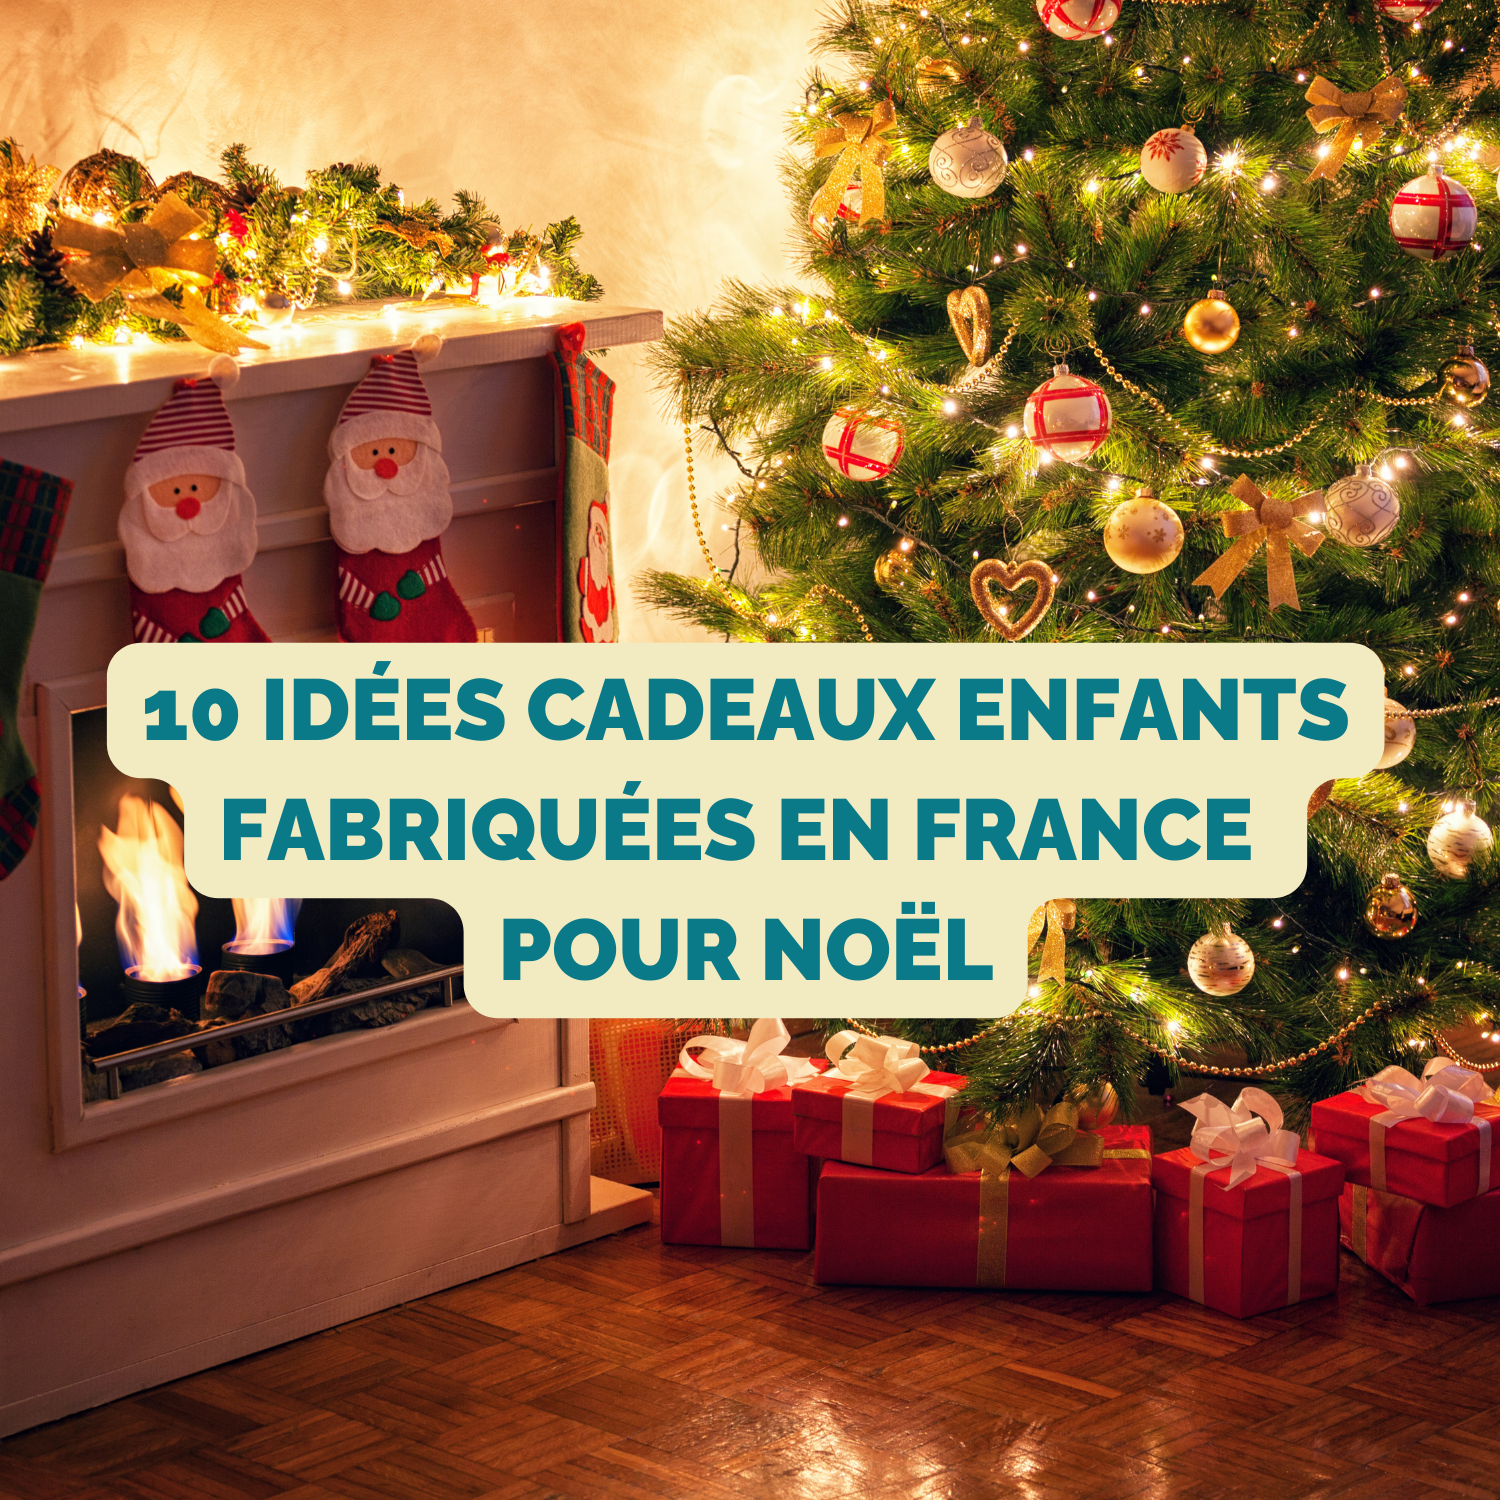 10 idées cadeaux enfant fabriquées en france pour noel made in france la maison tricolore